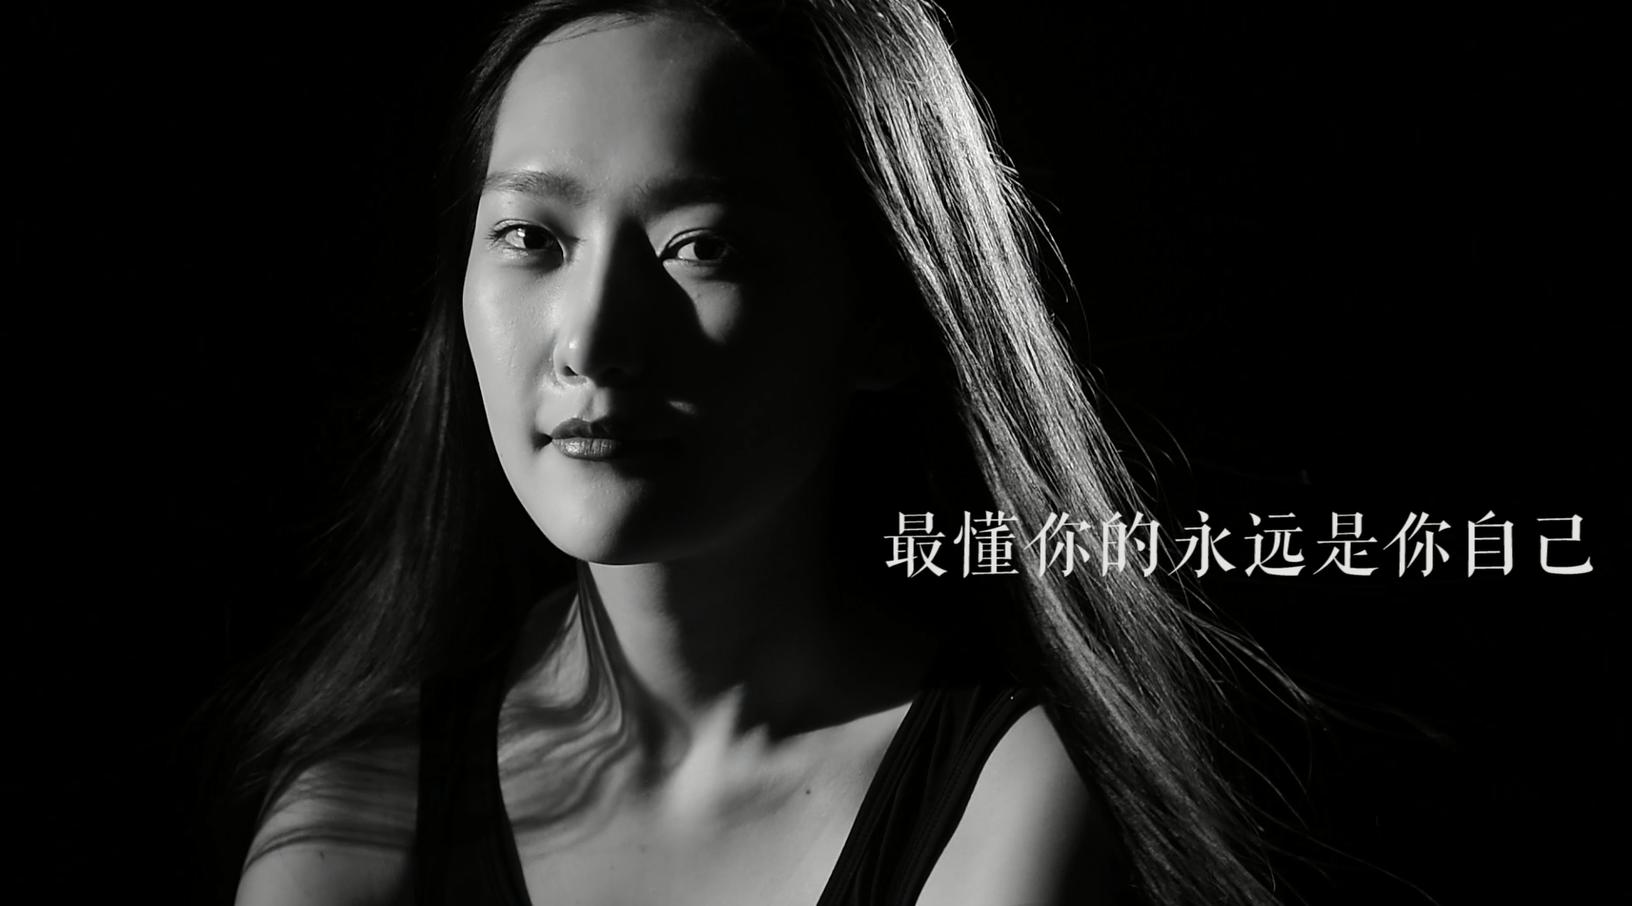 【时尚篇】不隐藏，爱上自己——中国精英女性影响力论坛宣传片